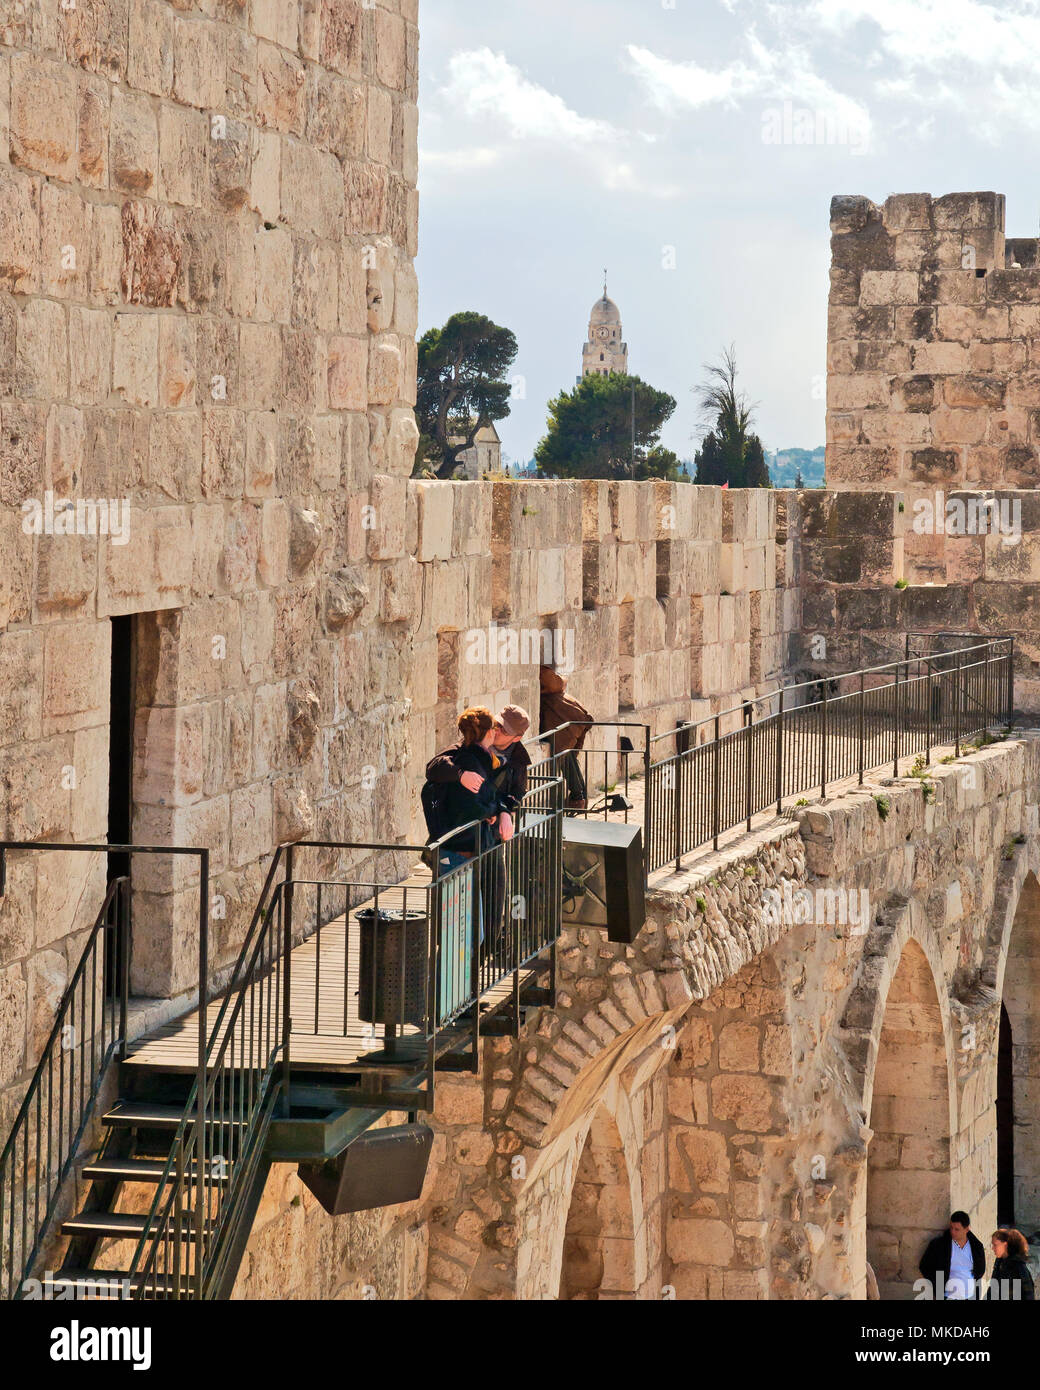 Couple de touristes reste au cours d'excursion dans la ville de David, Jérusalem, capitale d'Israël, Asie, Moyen Orient Banque D'Images